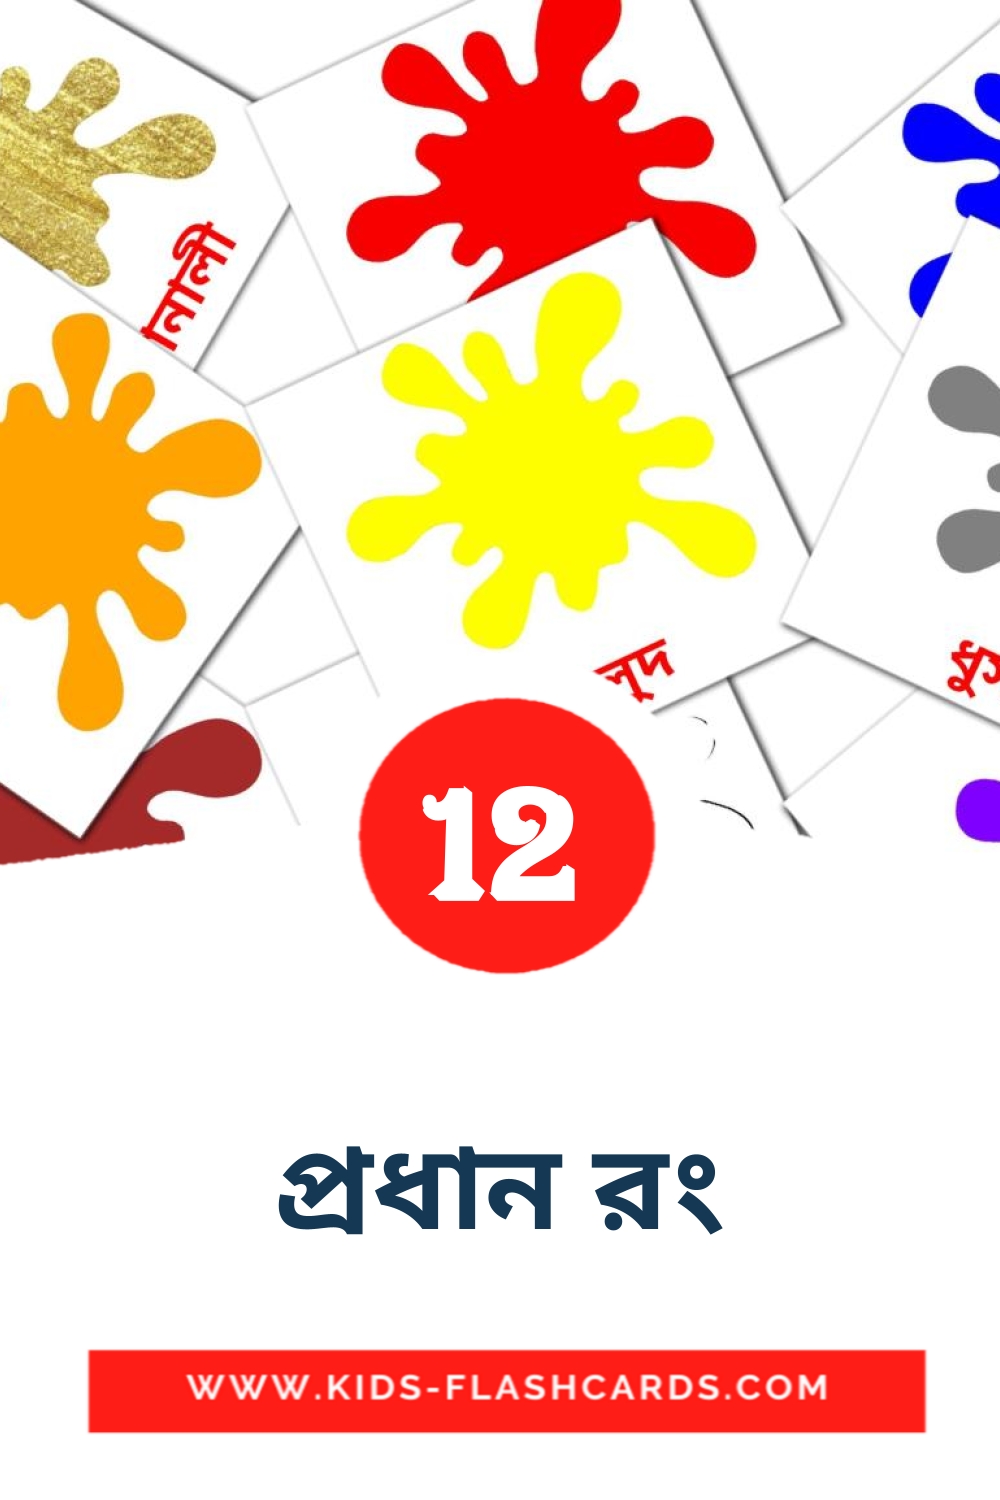 12 cartes illustrées de প্রধান রং pour la maternelle en bengali